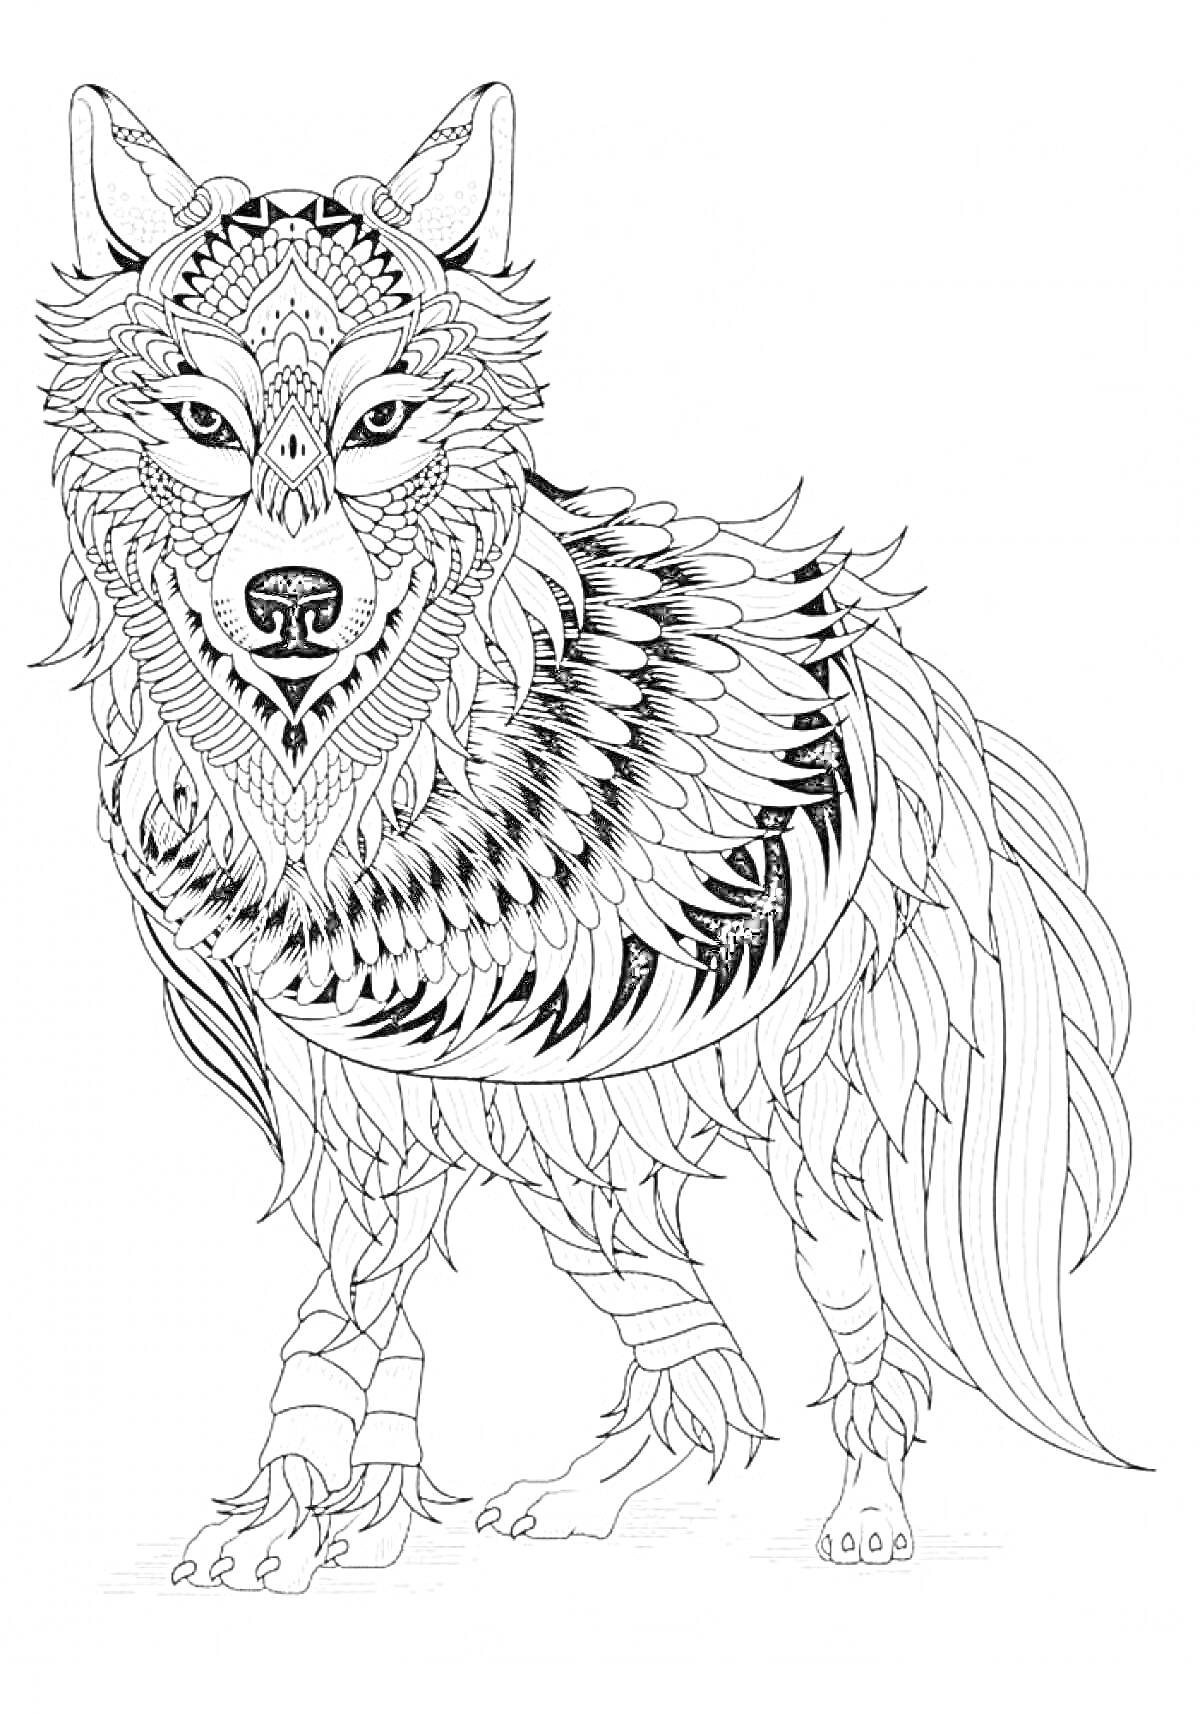 Волк с узорами на теле